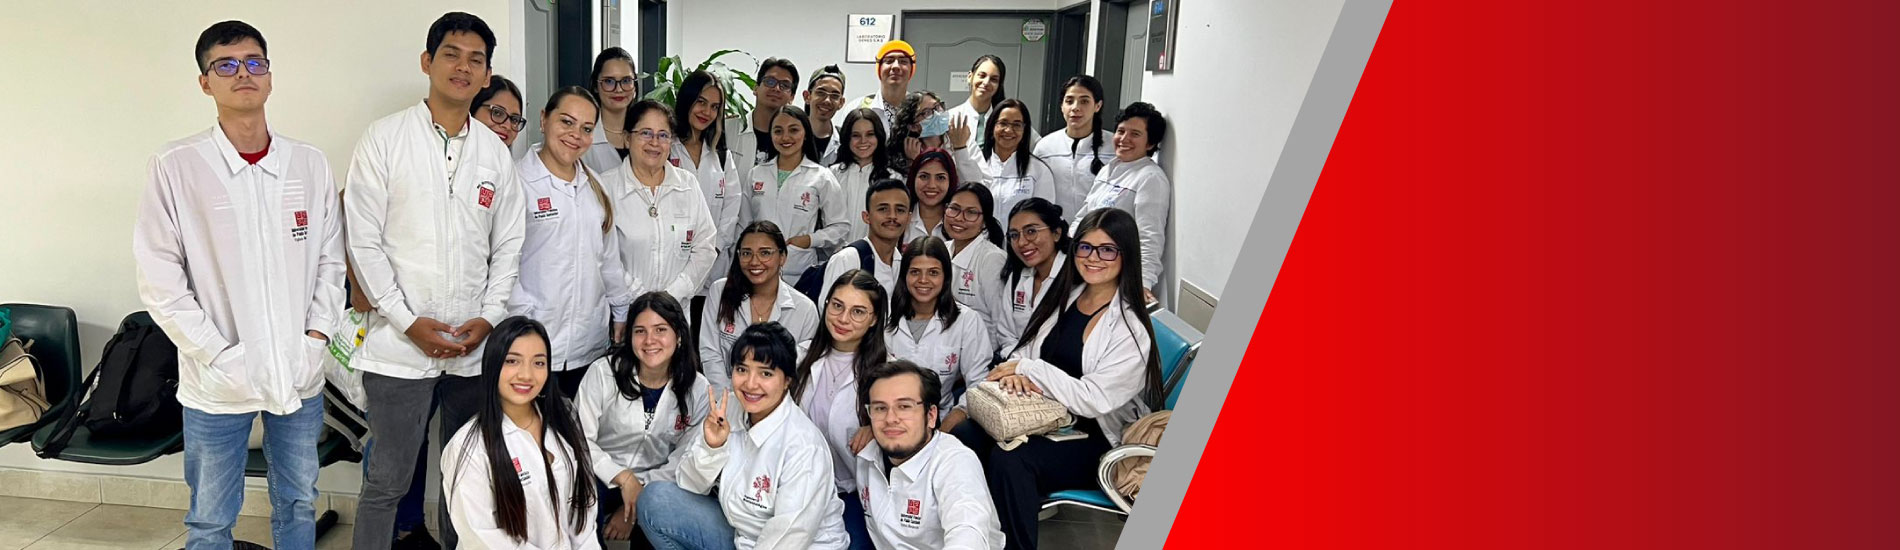 Estudiantes de Ingeniería Biotecnológica realizaron visita académica a empresas de Medellín 